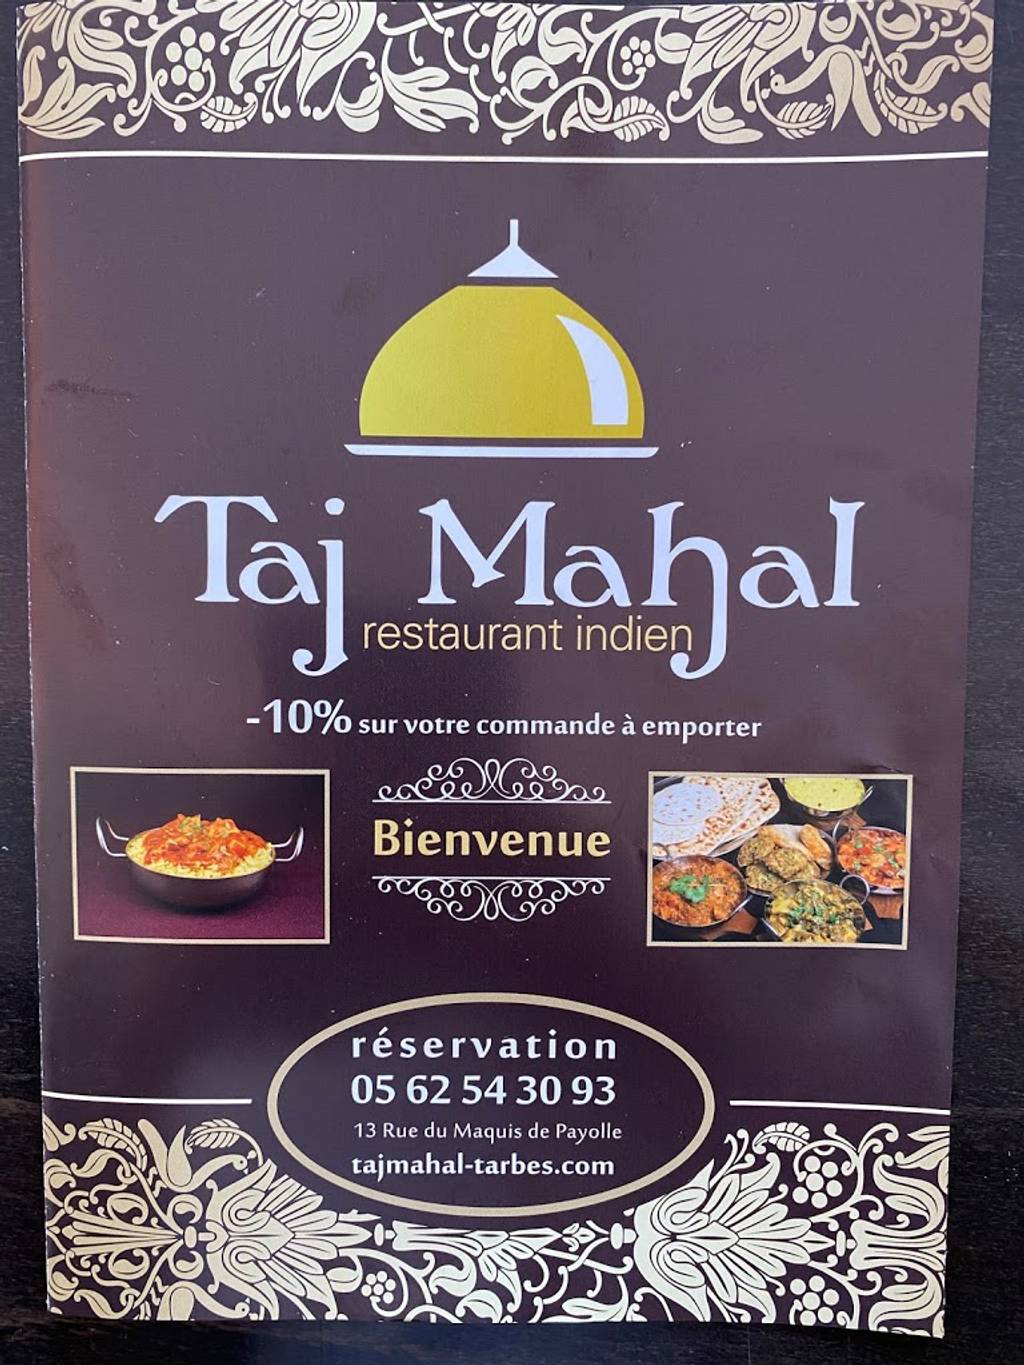 Taj Mahal Indien Tarbes - Font Food Vegetarian food Advertising Cuisine